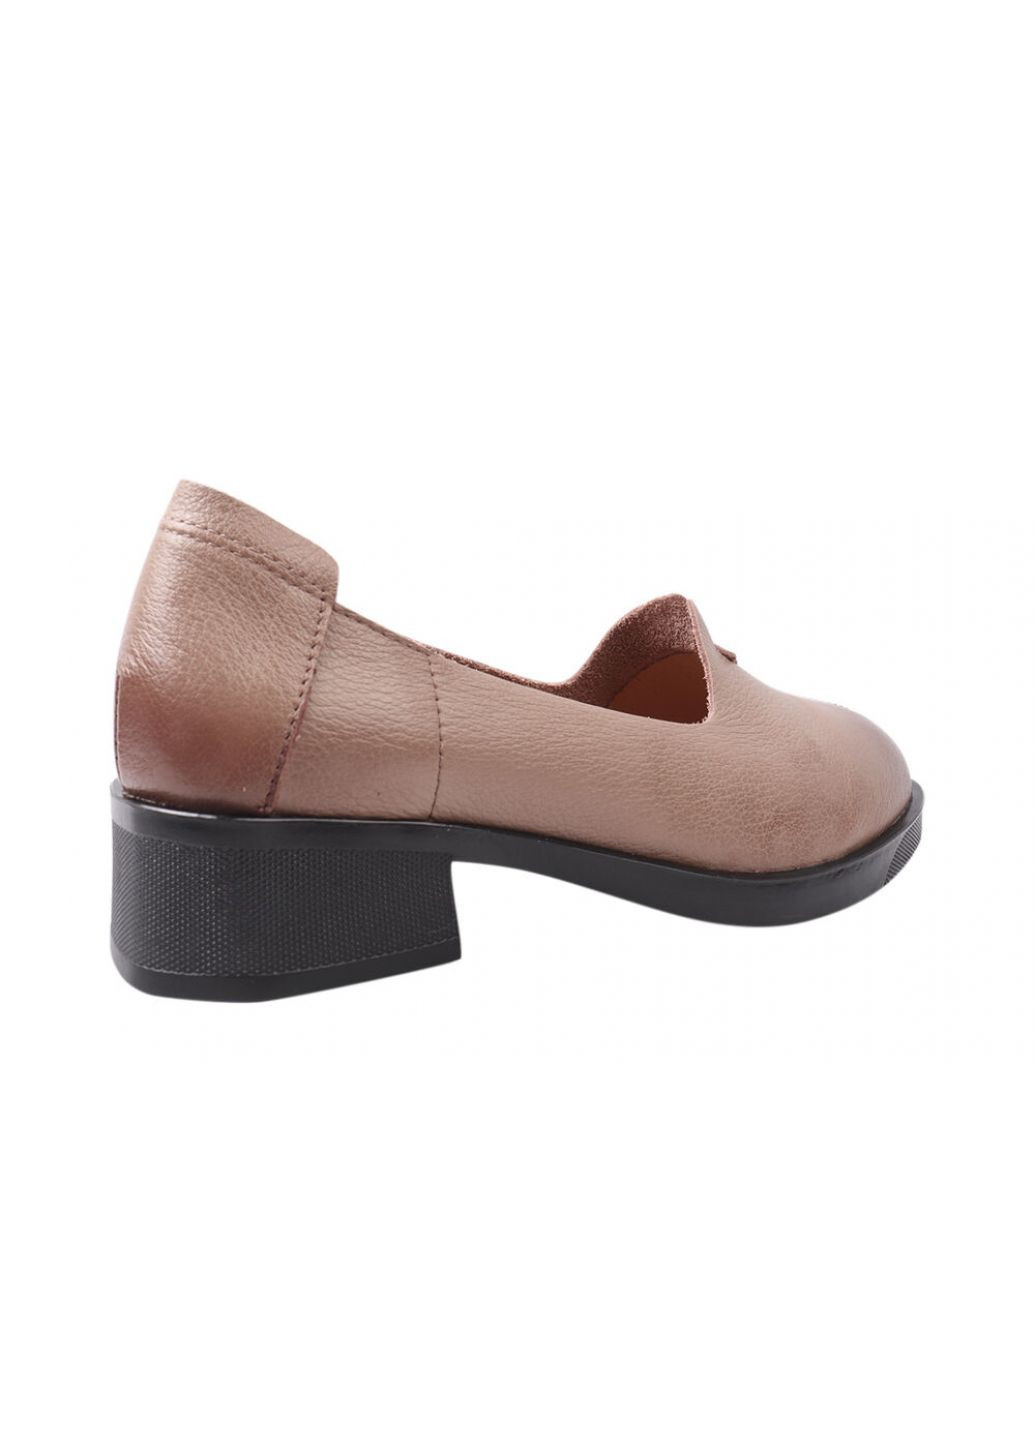 Туфлі жіночі з натуральної шкіри, на низькому ходу, колір капучино, FARINNI 150-21dtc (257429245)